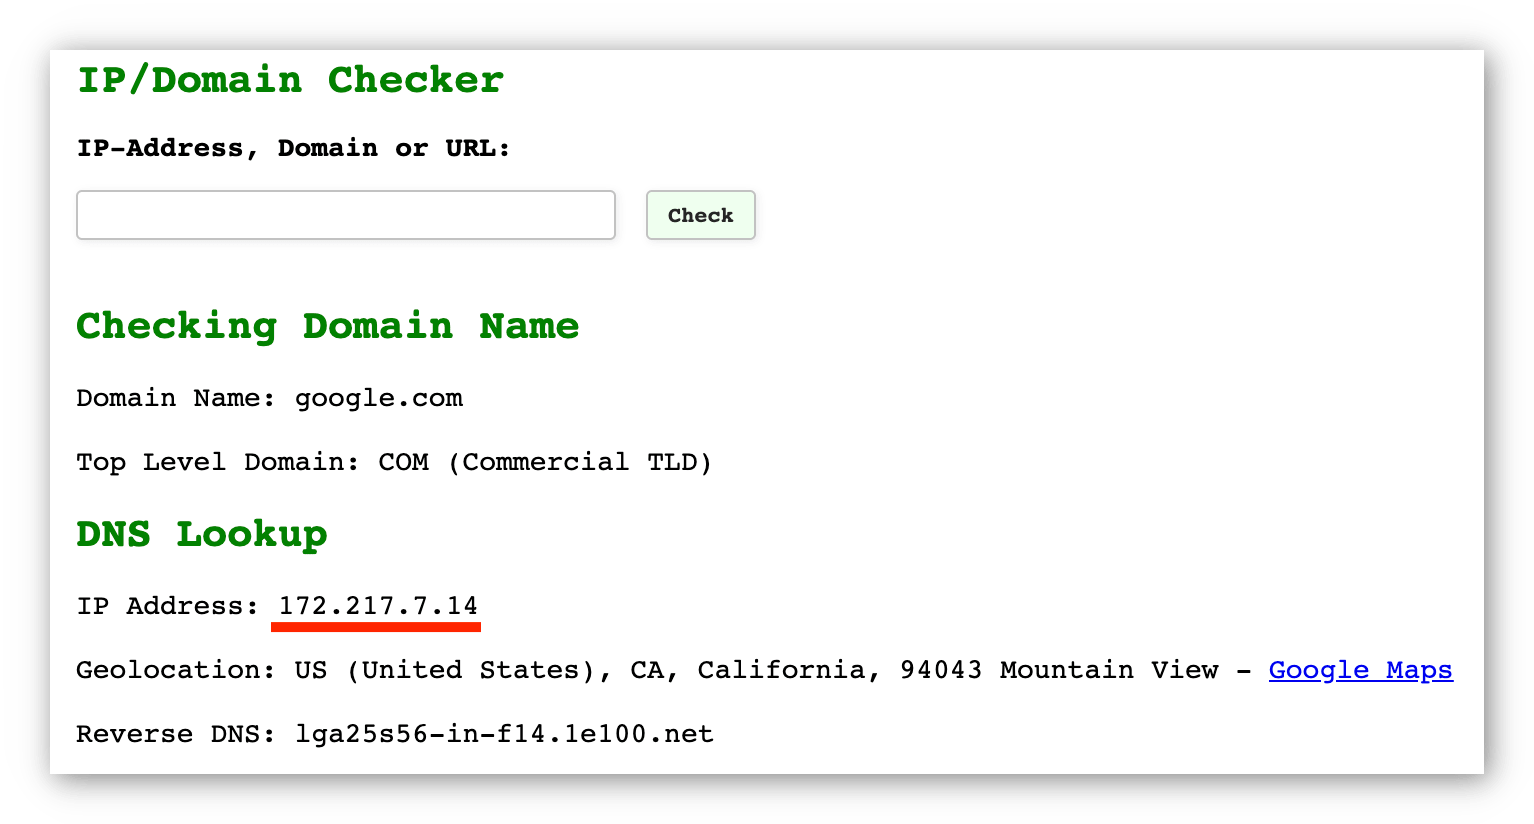 لقطة شاشة من أداة Geotek IP Checker مع عرض عنوان IP